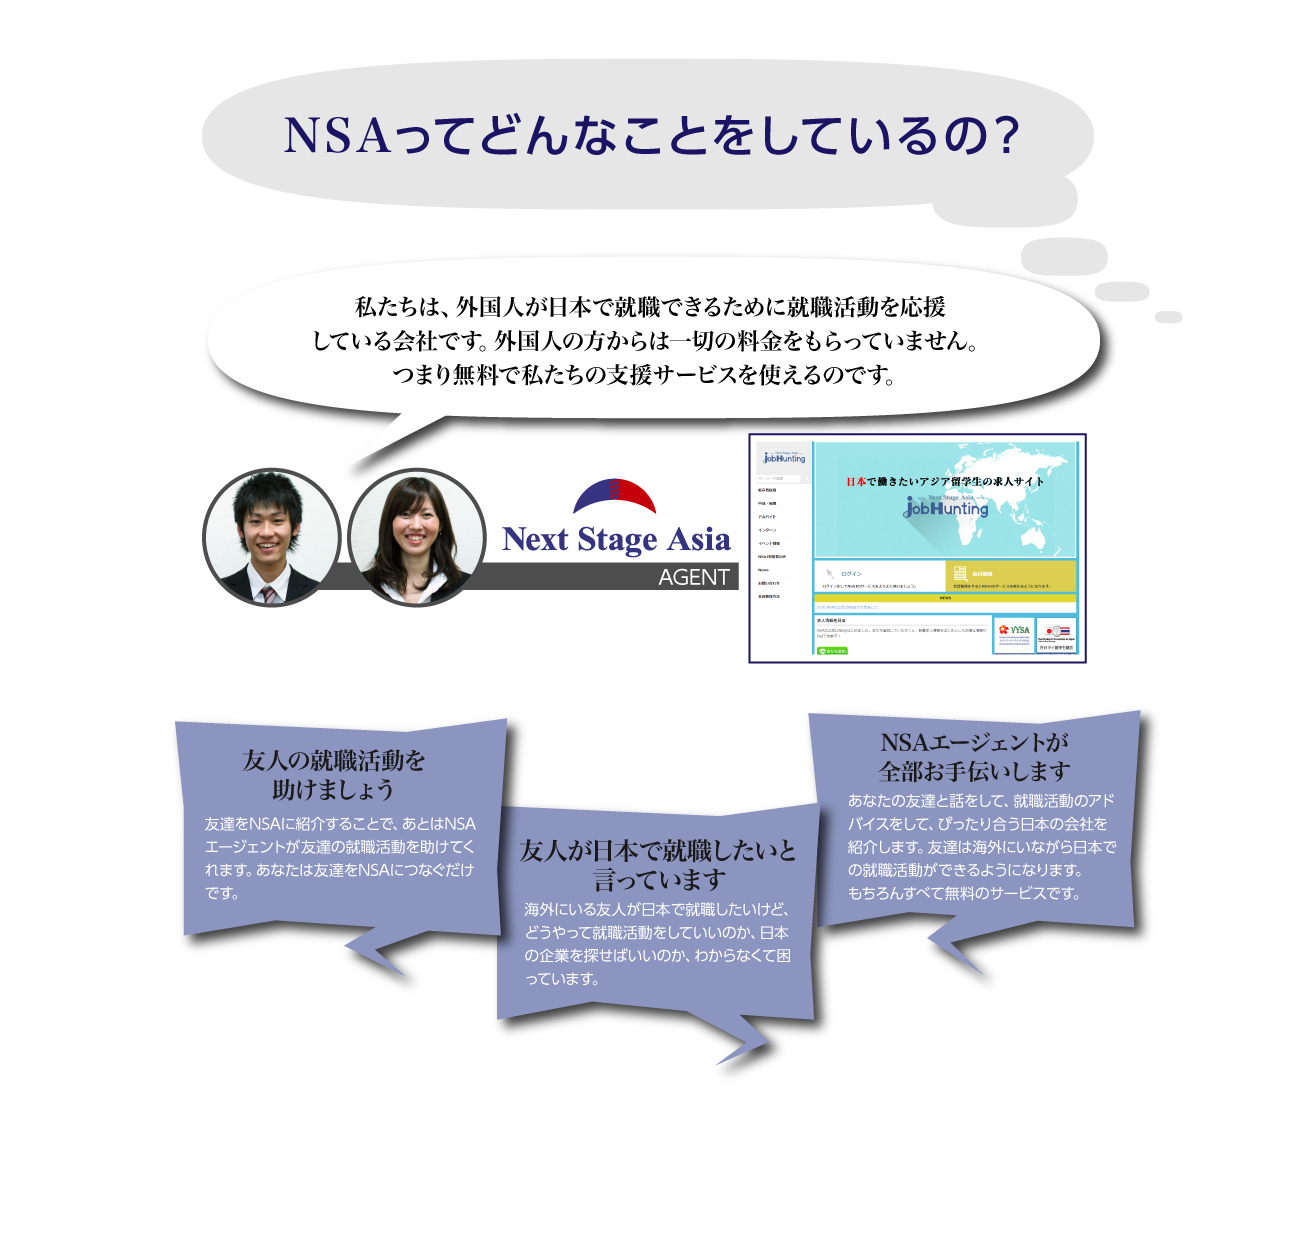 外国人求職者や留学生の抱えている悩みを解決し、日本の魅力のある企業で働けるように、外国人の就職活動をサポートをすることが私たちのミッションです。